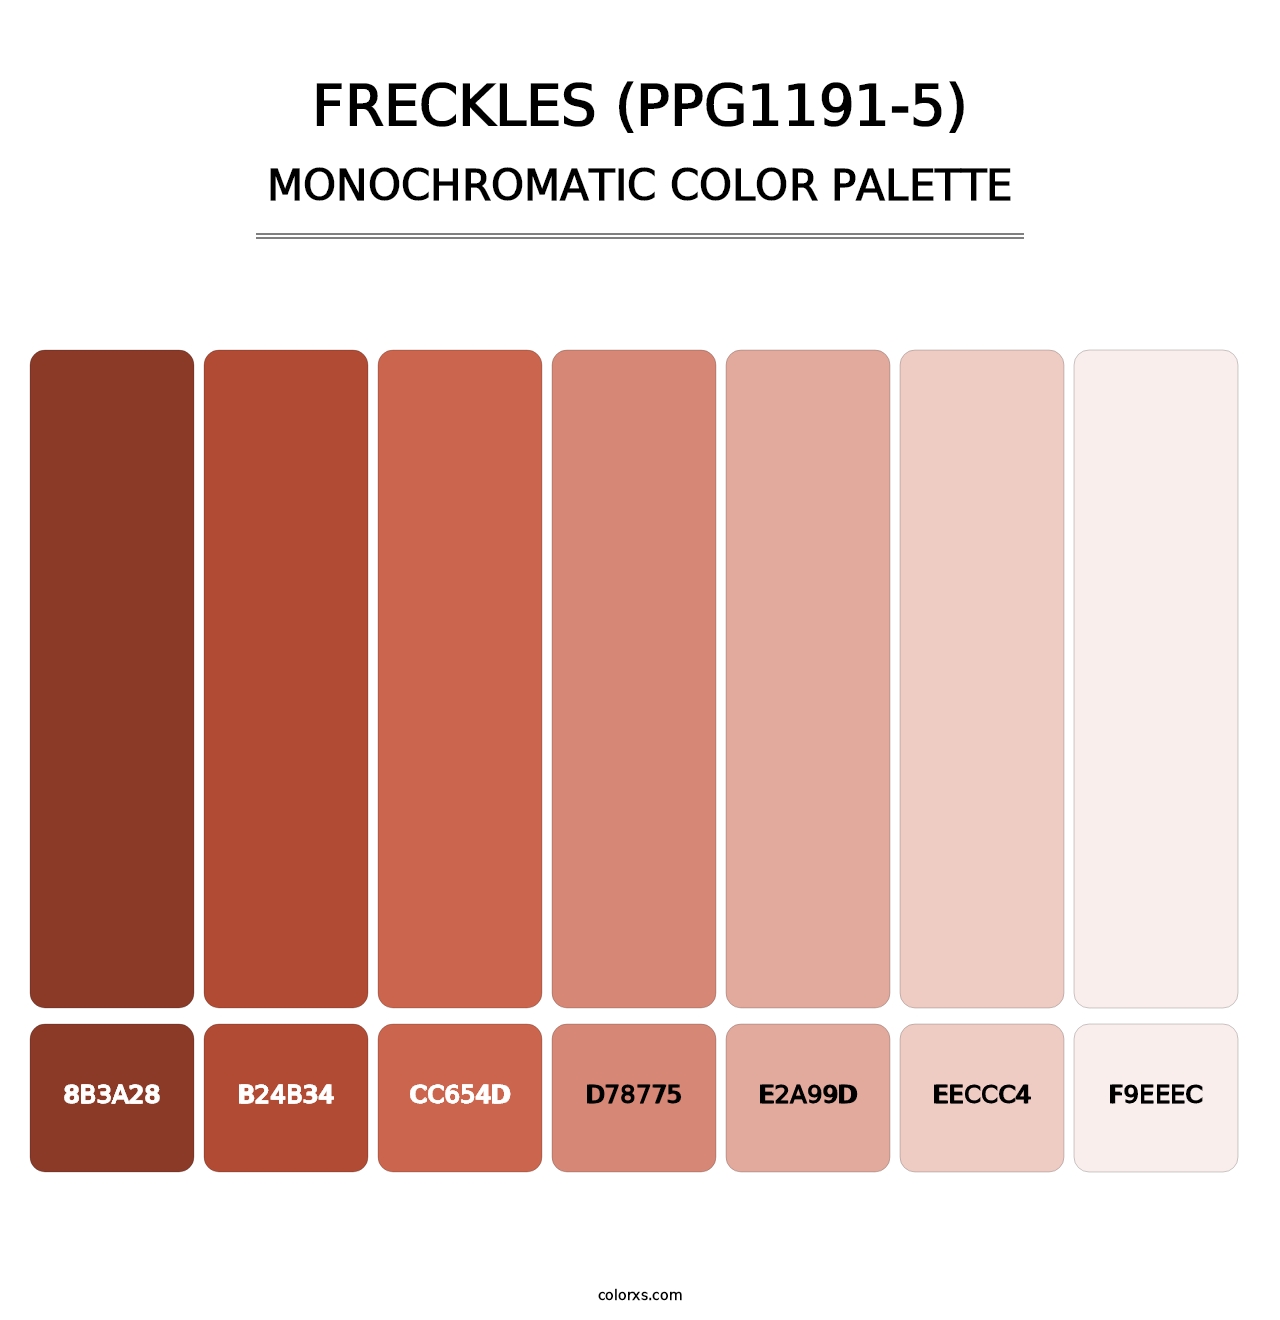 Freckles (PPG1191-5) - Monochromatic Color Palette